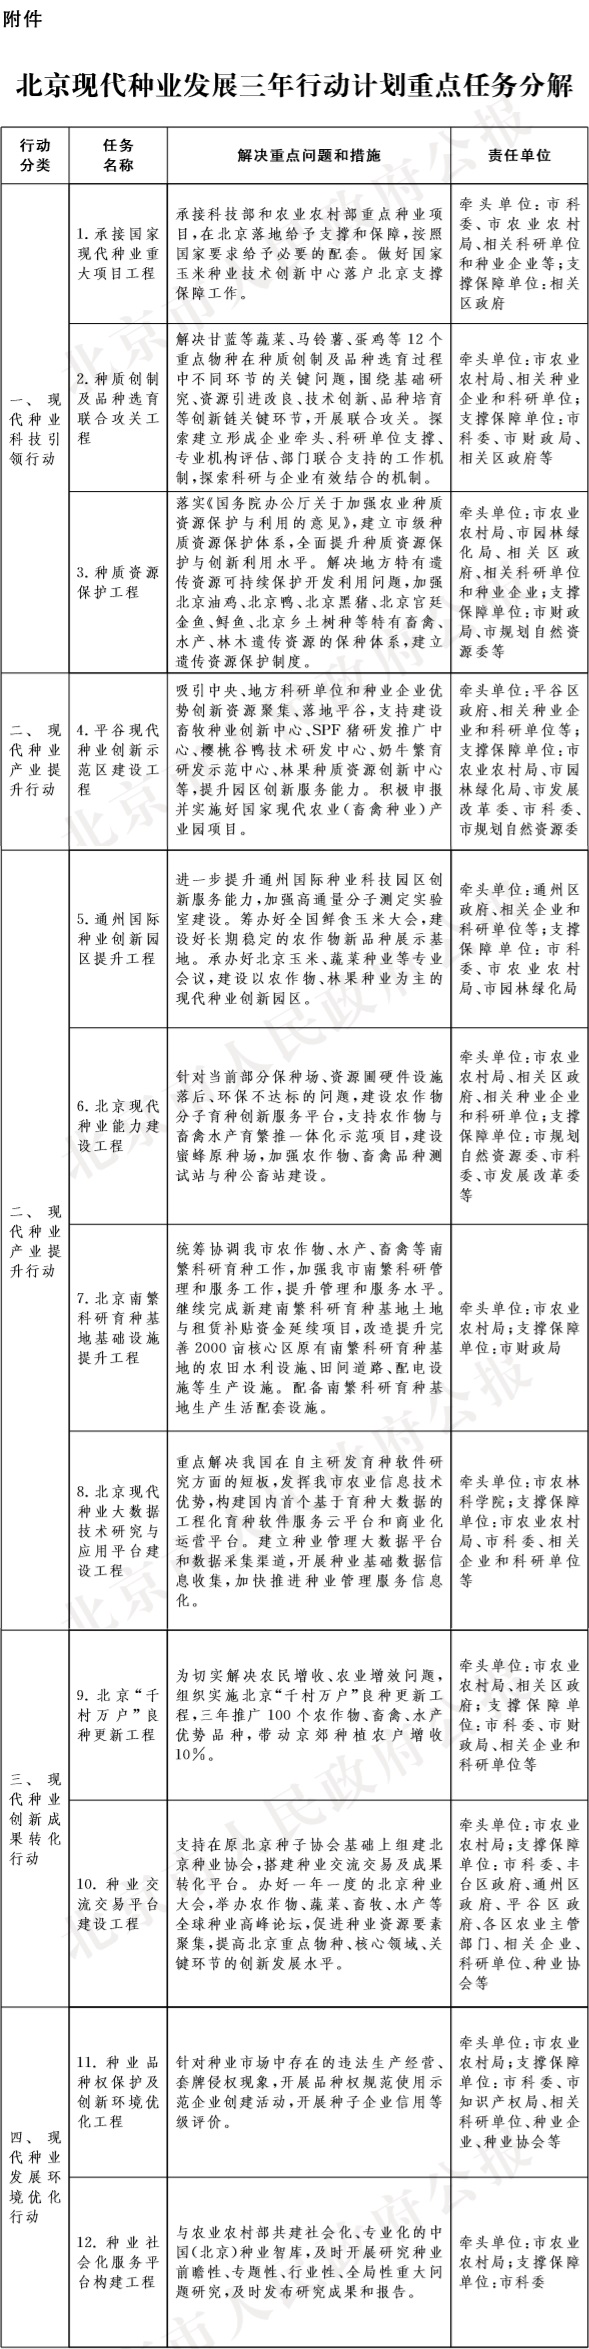 26-附件：北京現代種業發展三年行動計劃重點任務分解.jpg